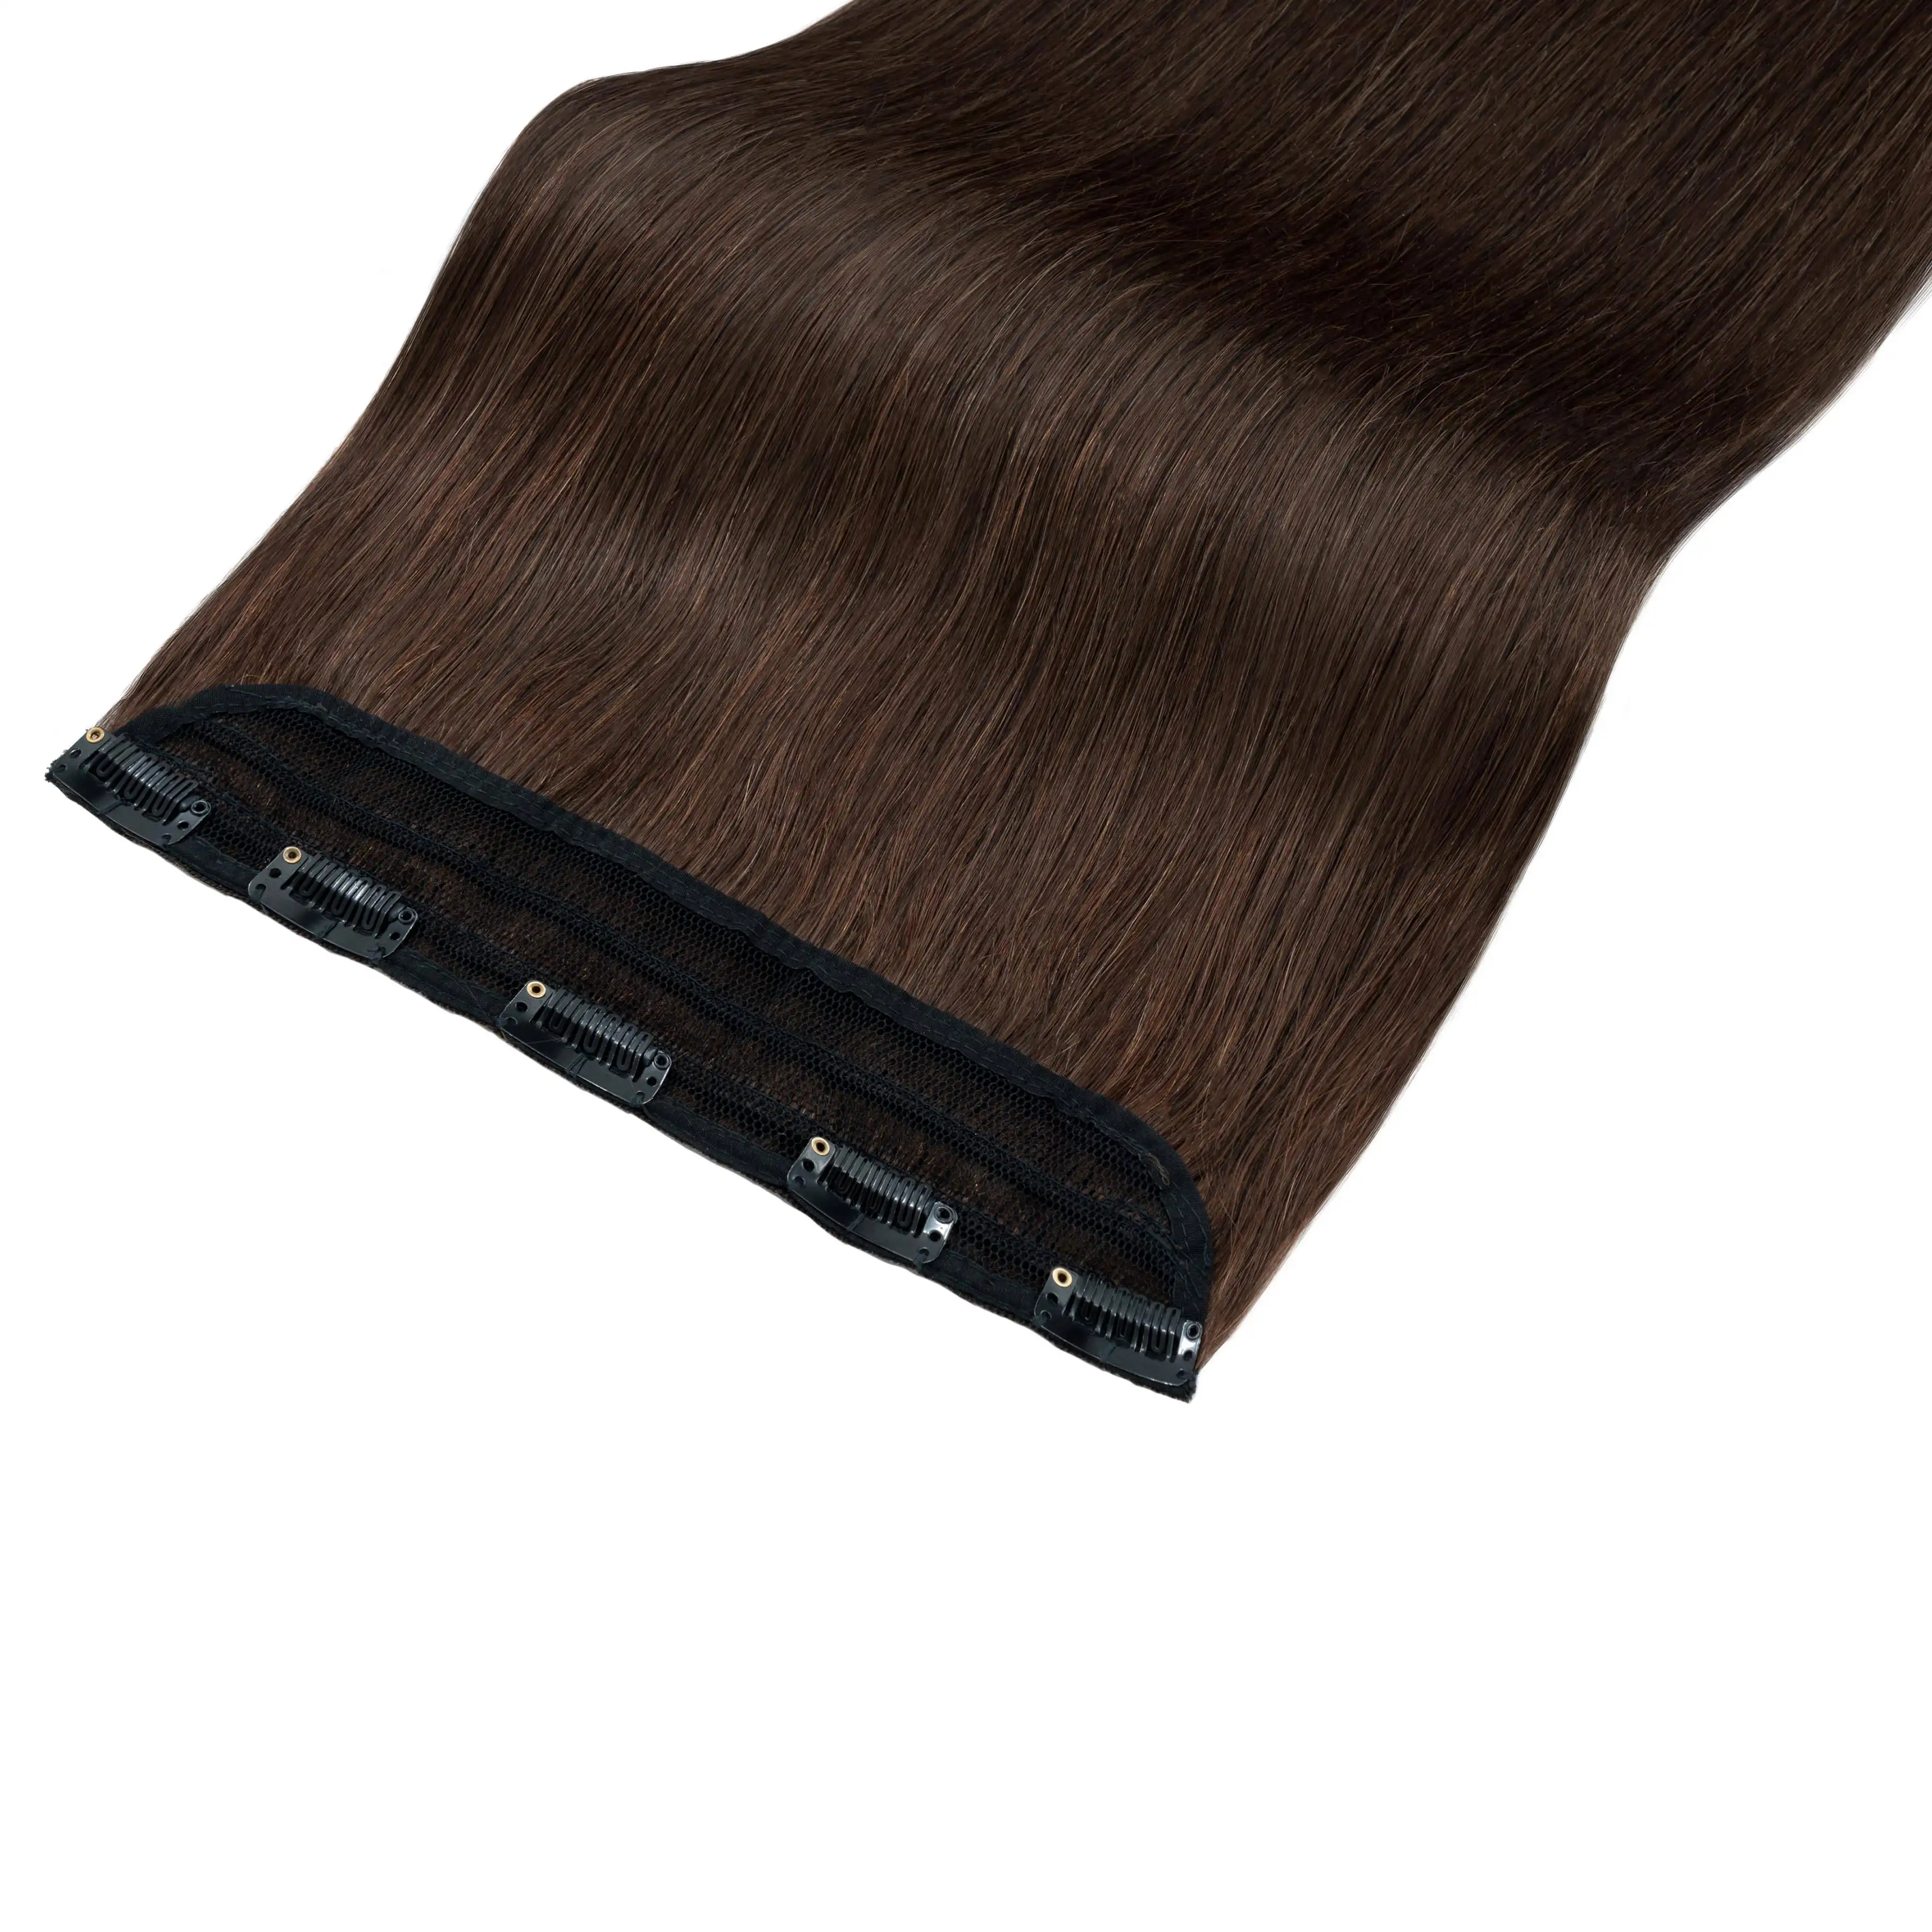 人毛エクステンションのストレートワンピースクリップクリップ付きシングル1ピースヘア横糸人毛